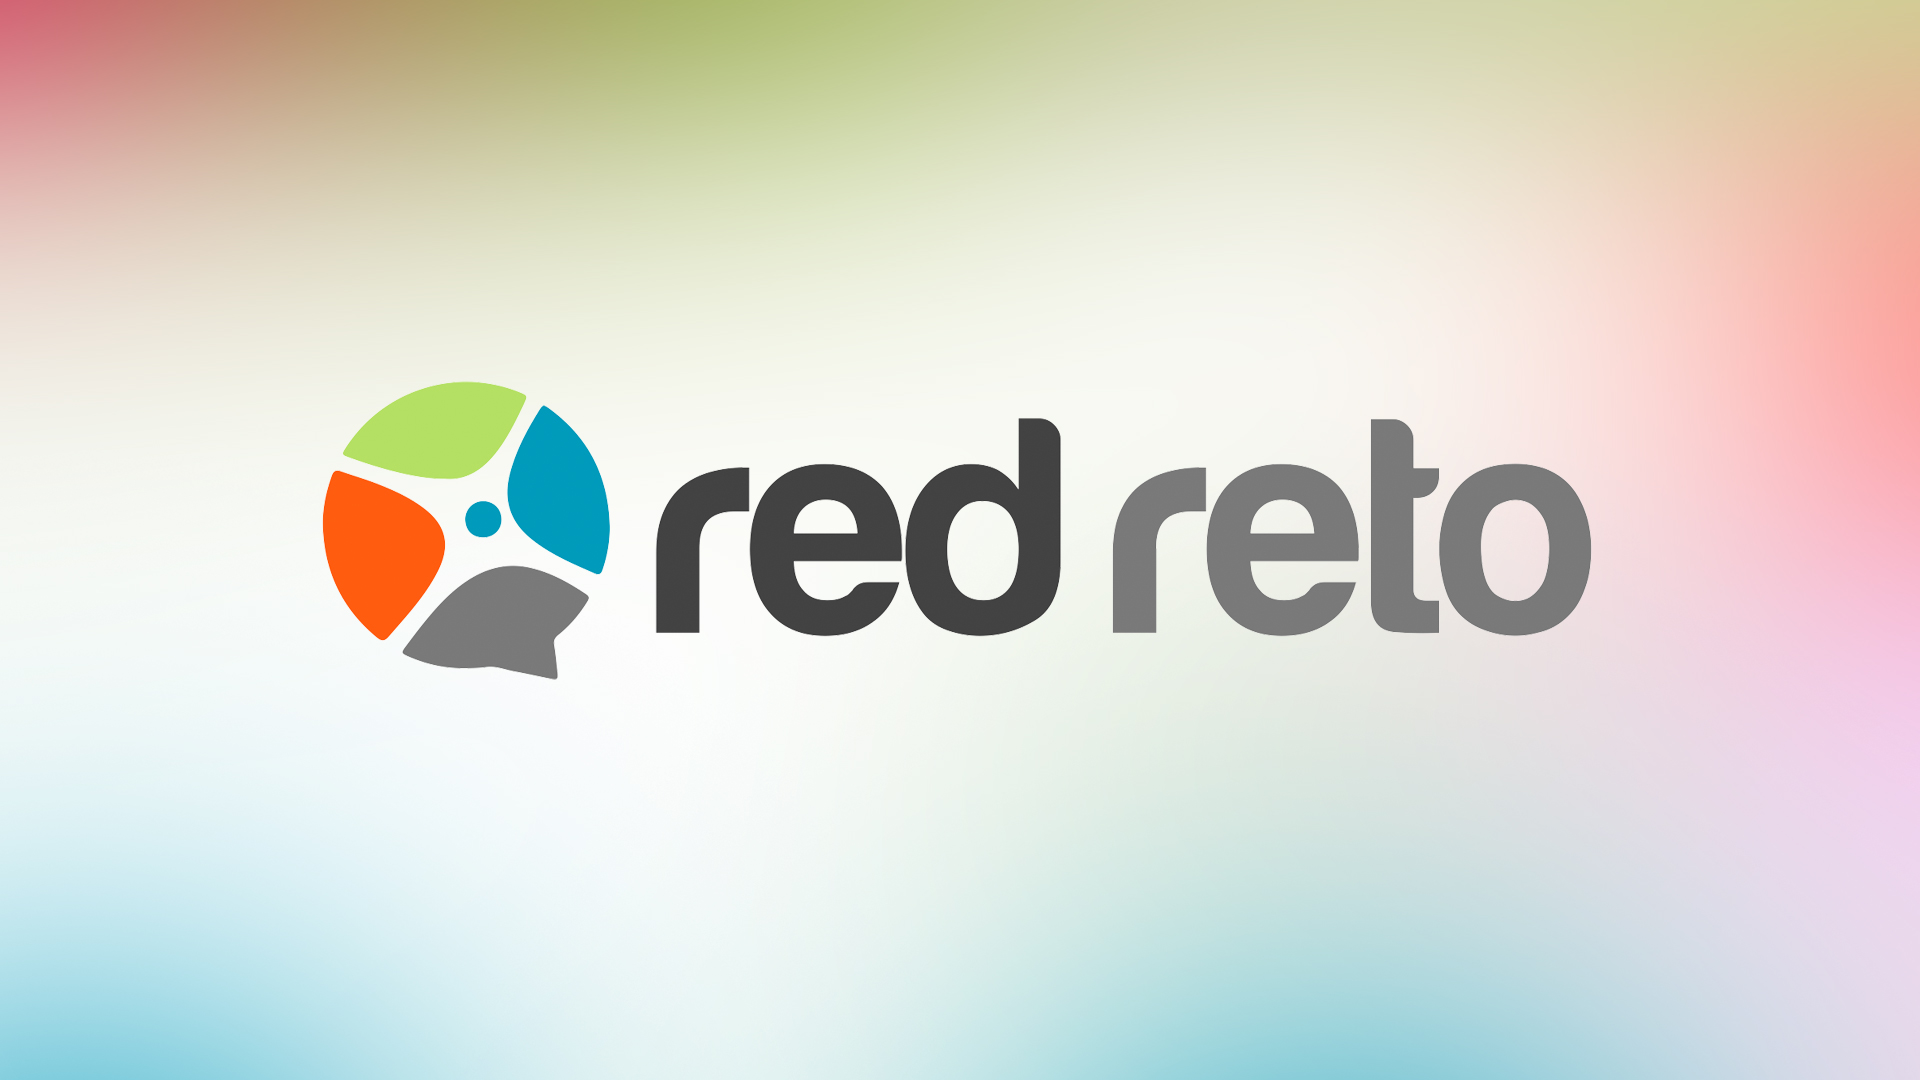 Red Reto